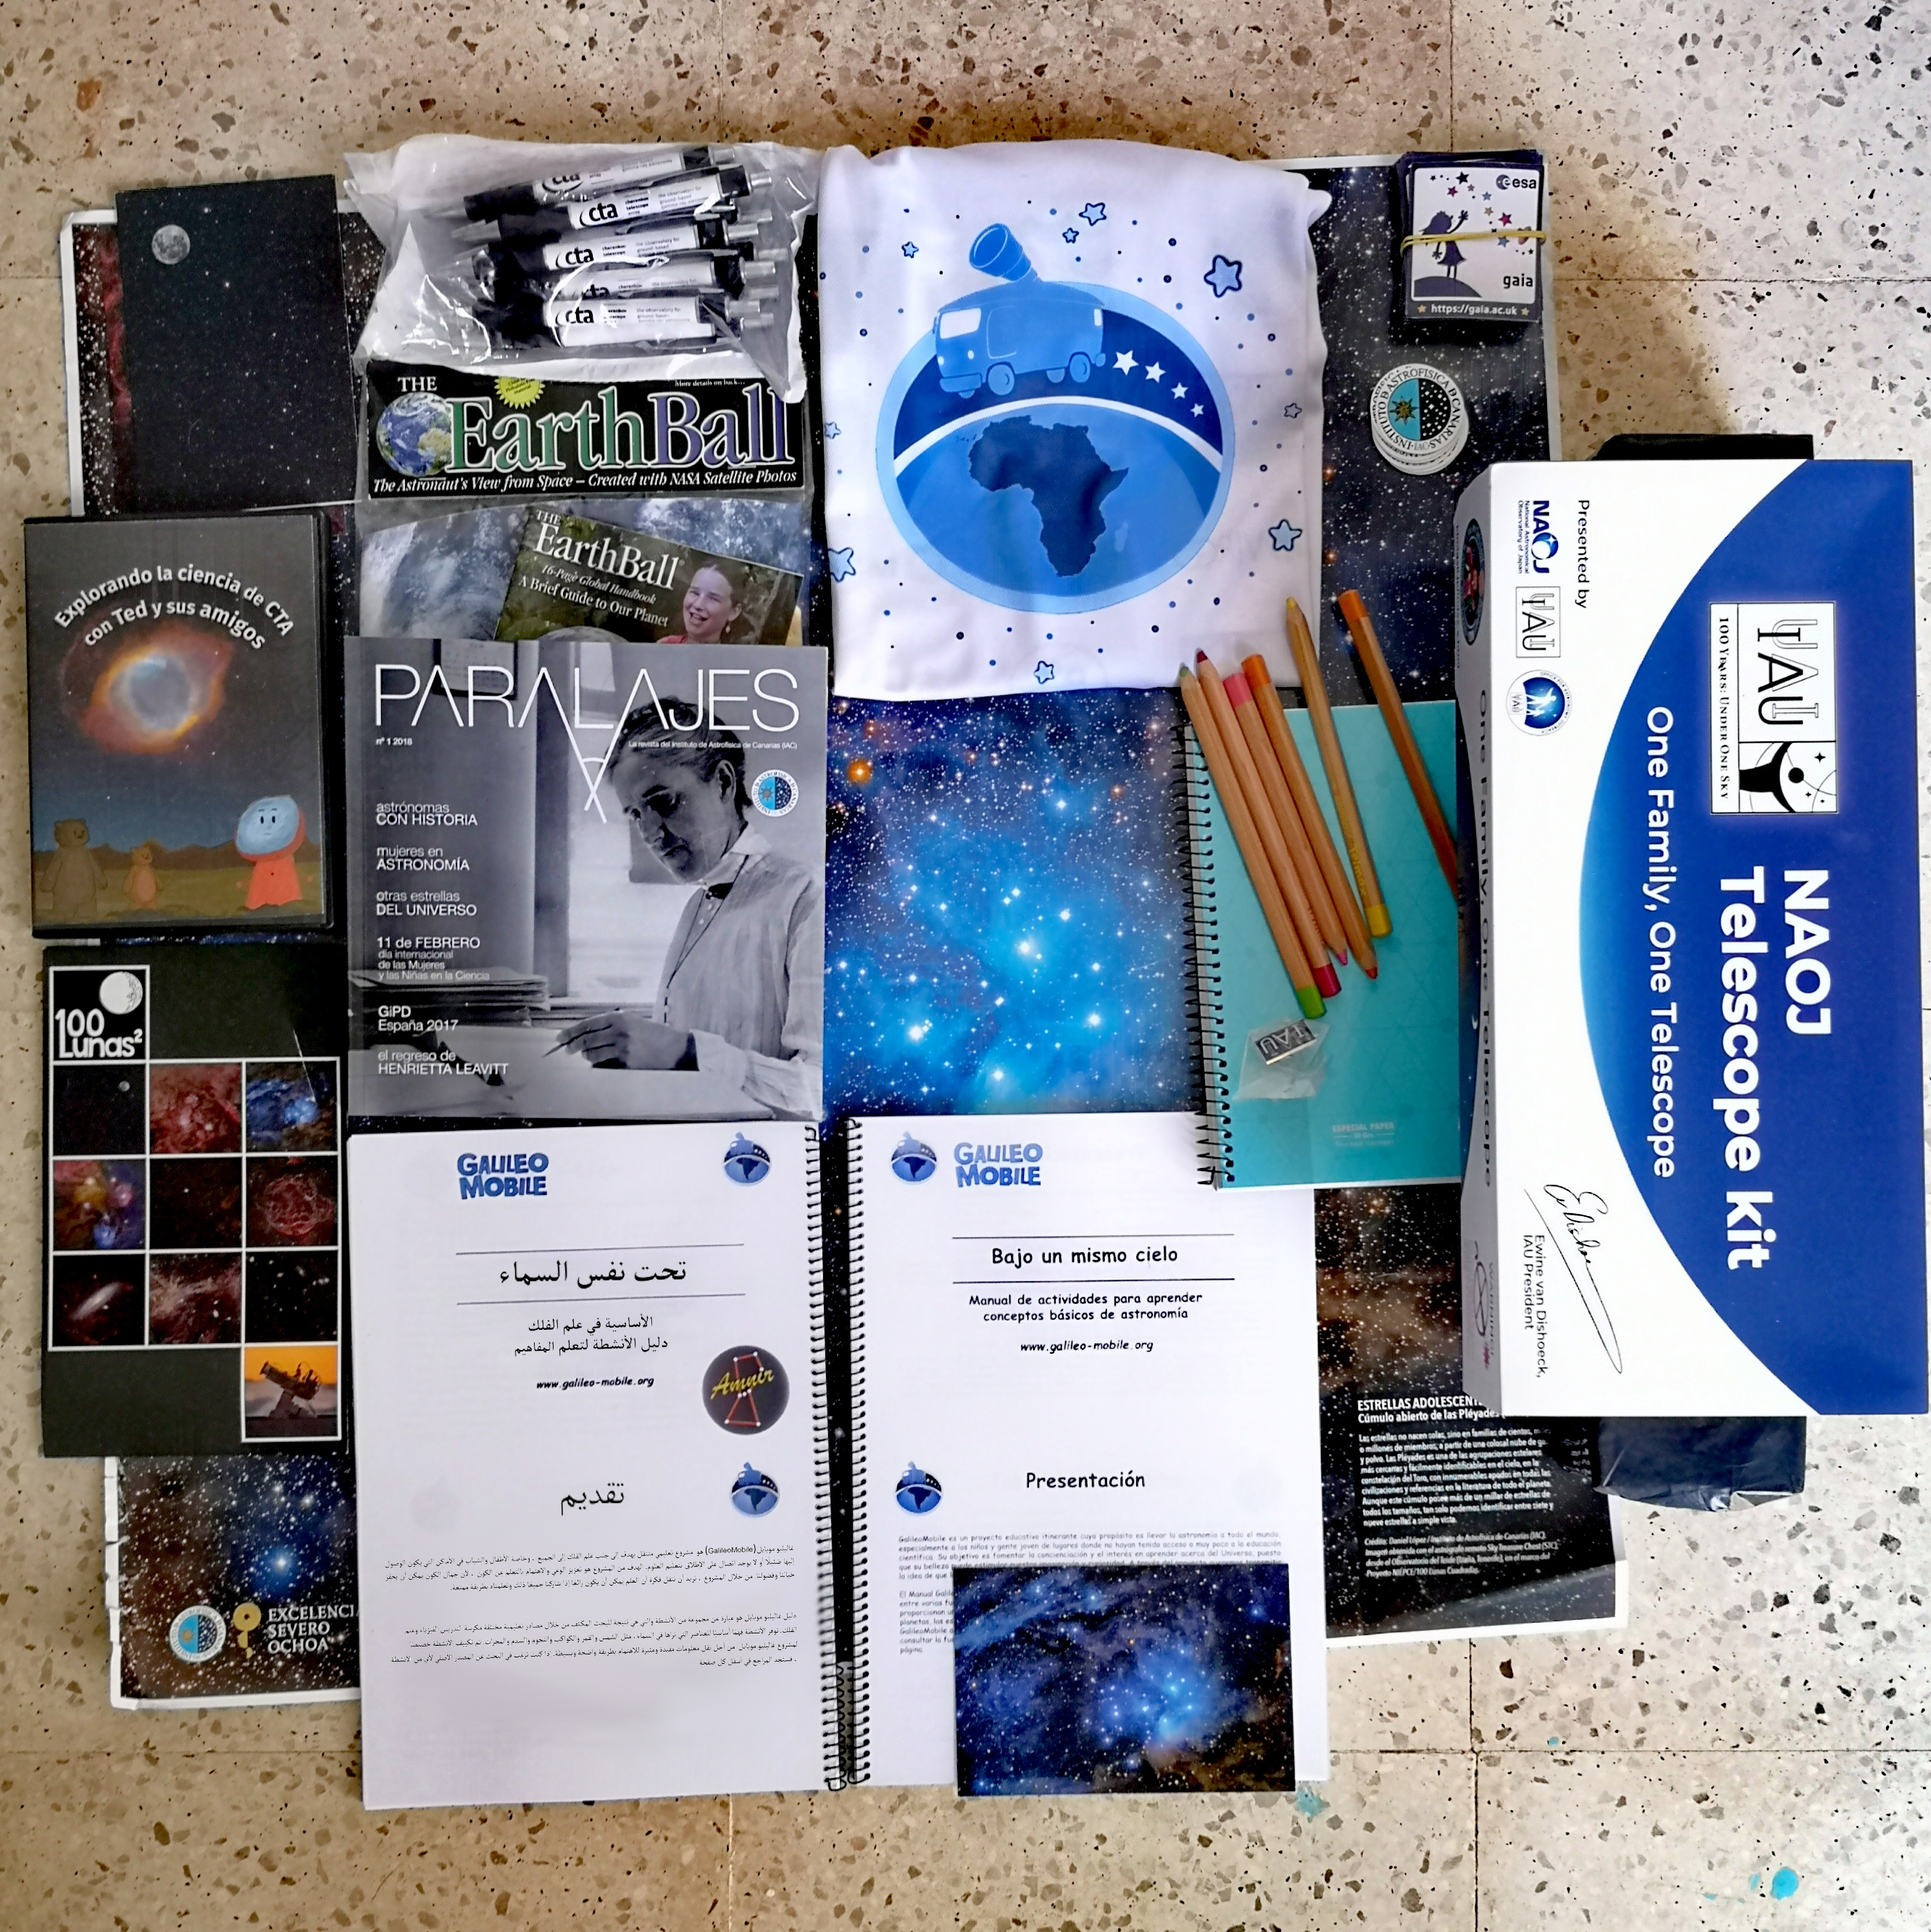 Kit de materiales educativos donados a los centros visitados. F. Carrelli, D. Rodrigues, F. Sordo, GalileoMobile.